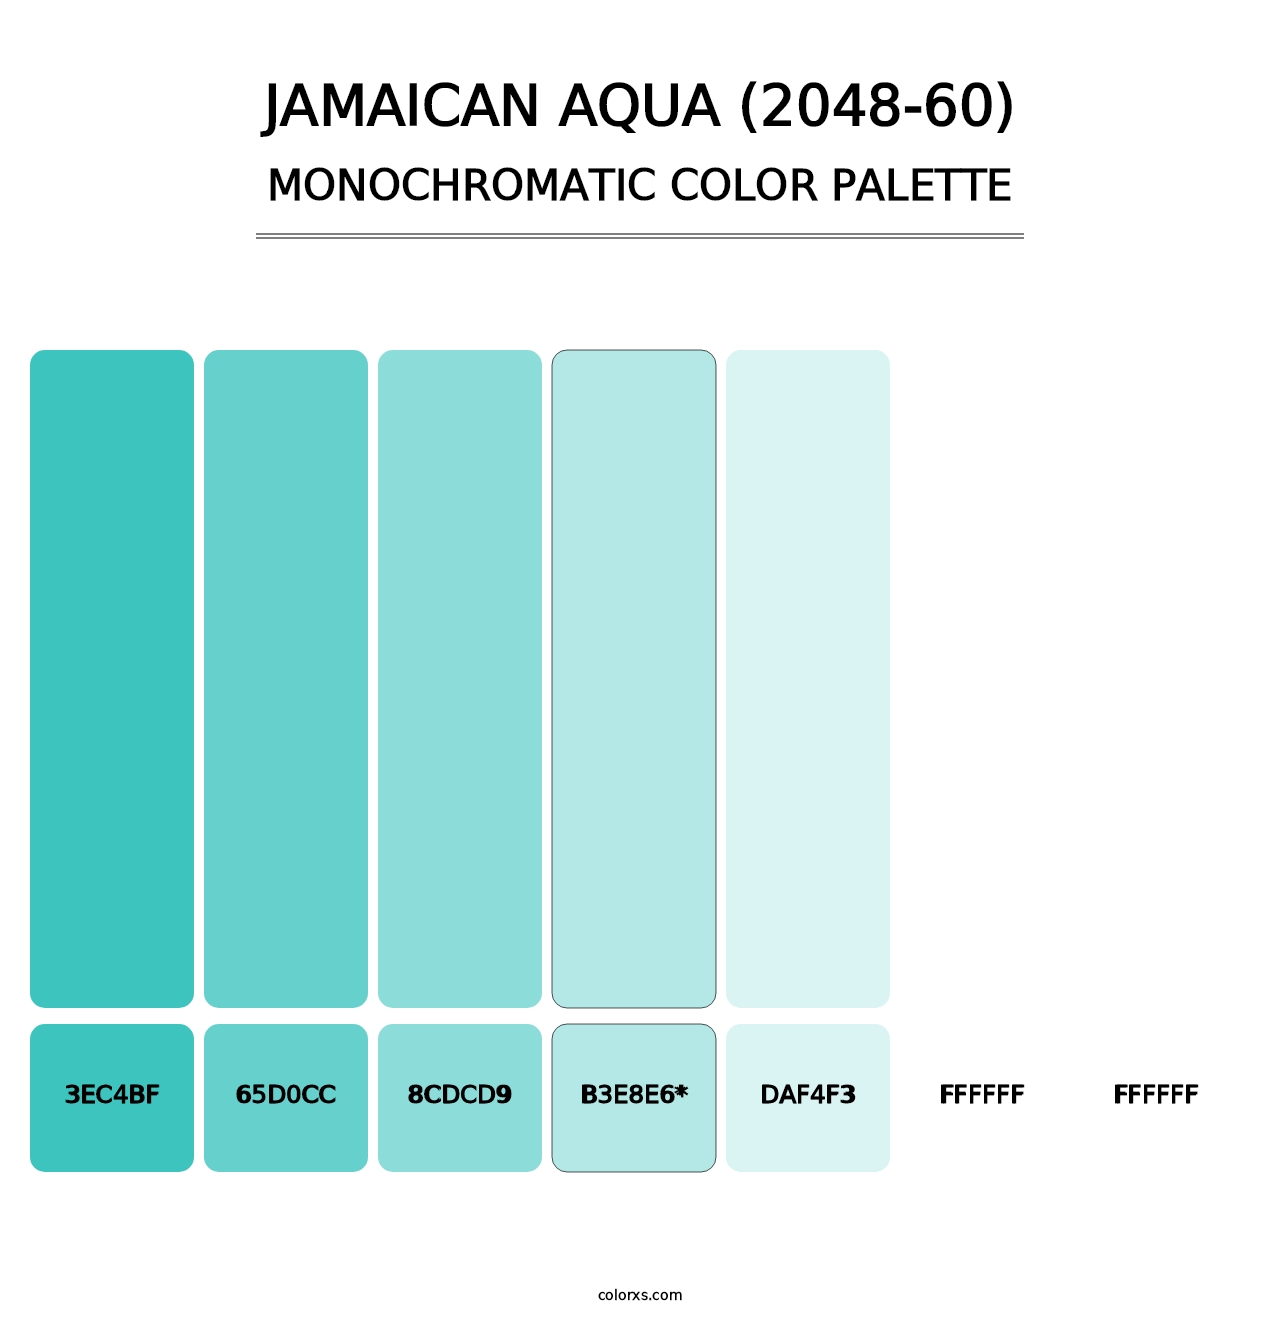 Jamaican Aqua (2048-60) - Monochromatic Color Palette